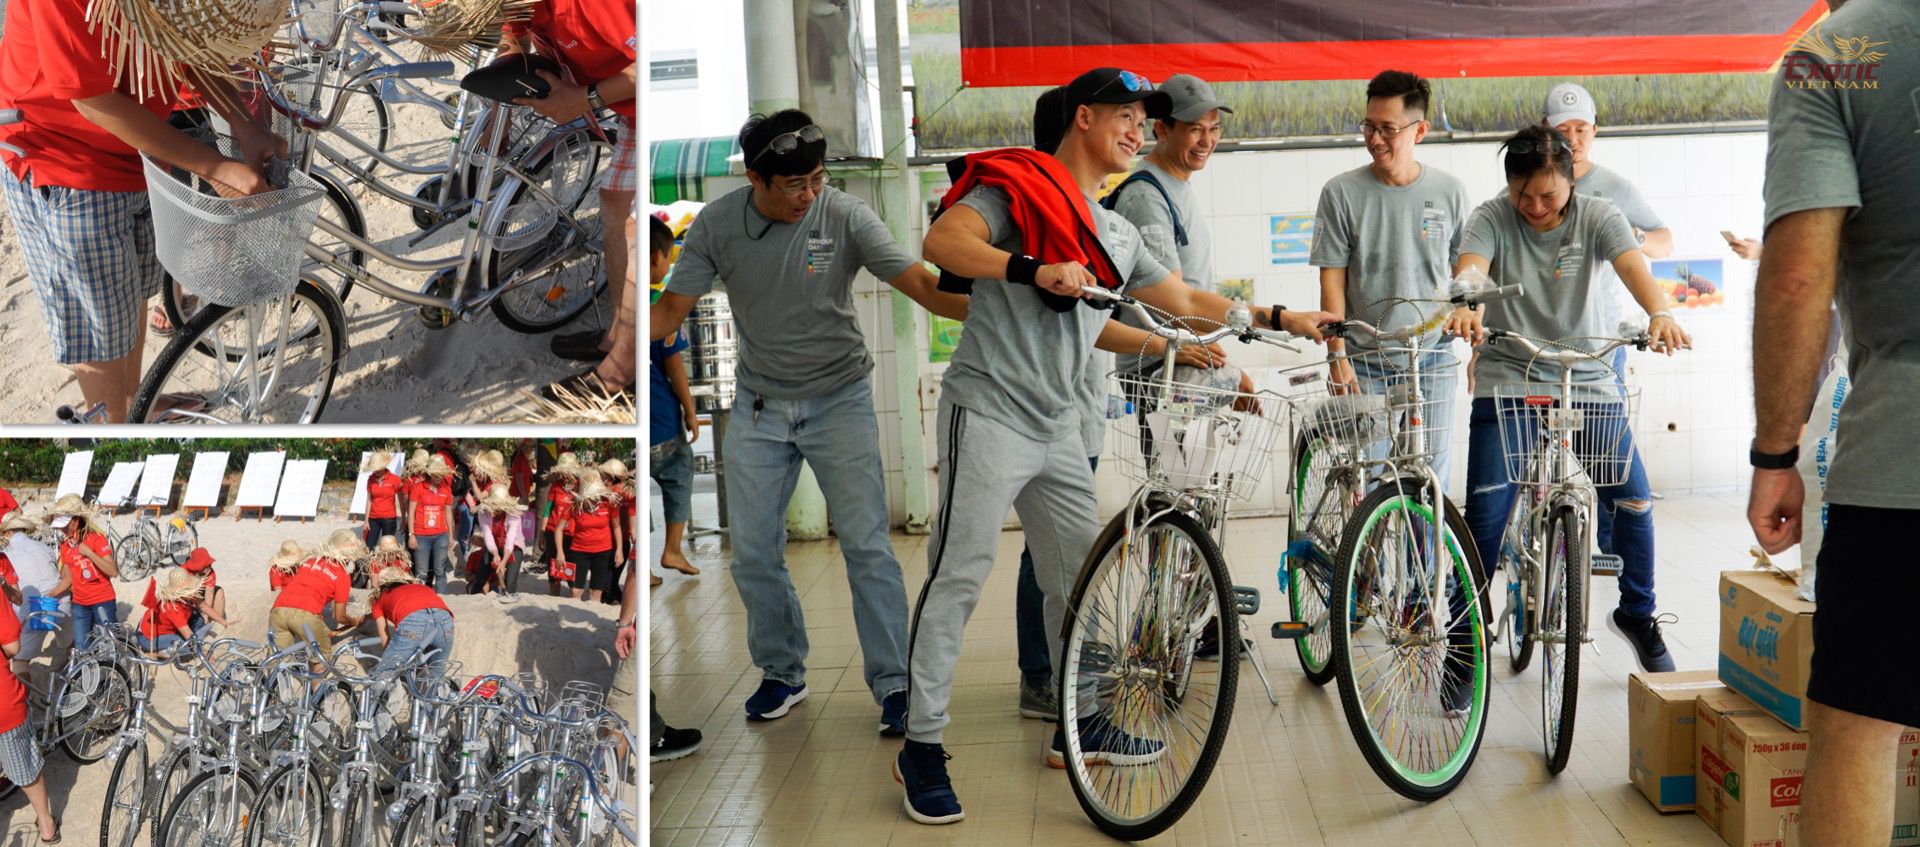 Trao xe đạp tiếp bước đến trường cho học sinh nghèo huyện dân tộc miền  núi biên giới Tịnh Biên